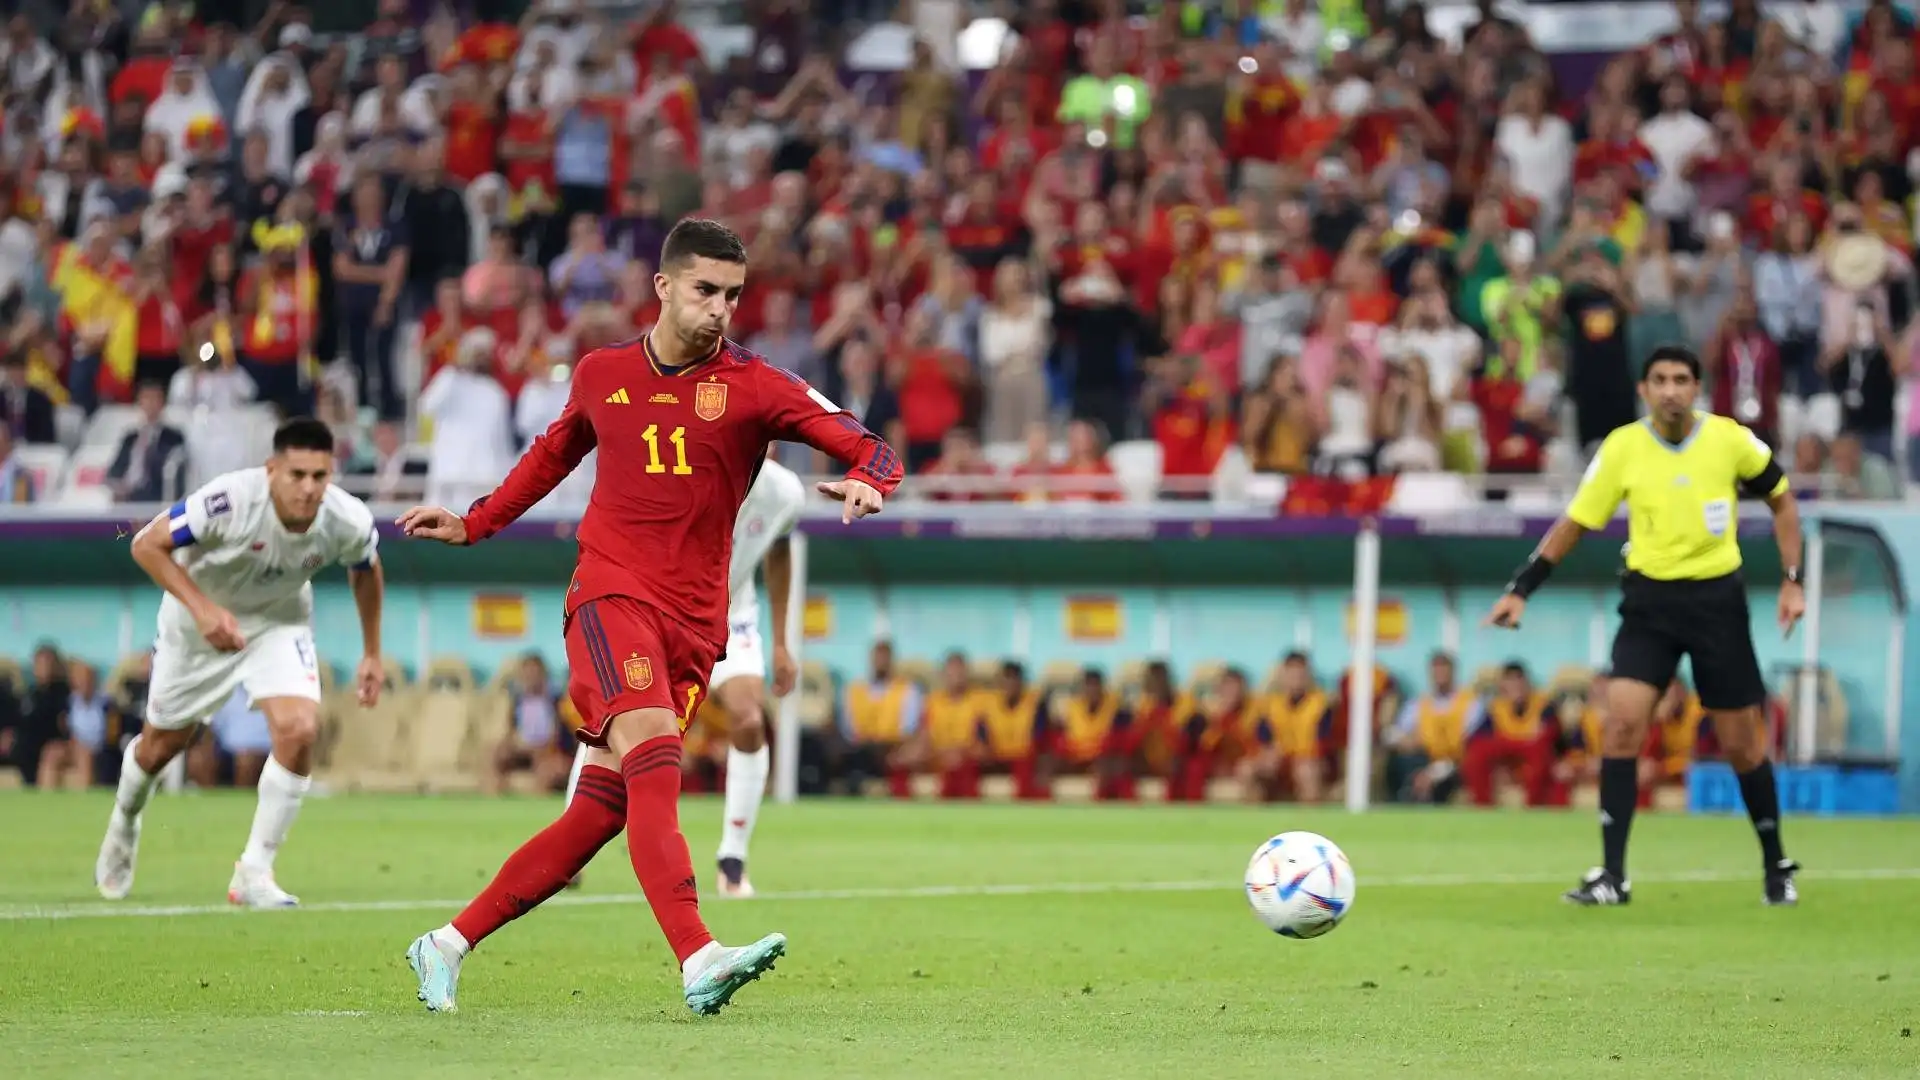 L'attaccante della Spagna ha messo a segno il terzo gol della Spagna su rigore